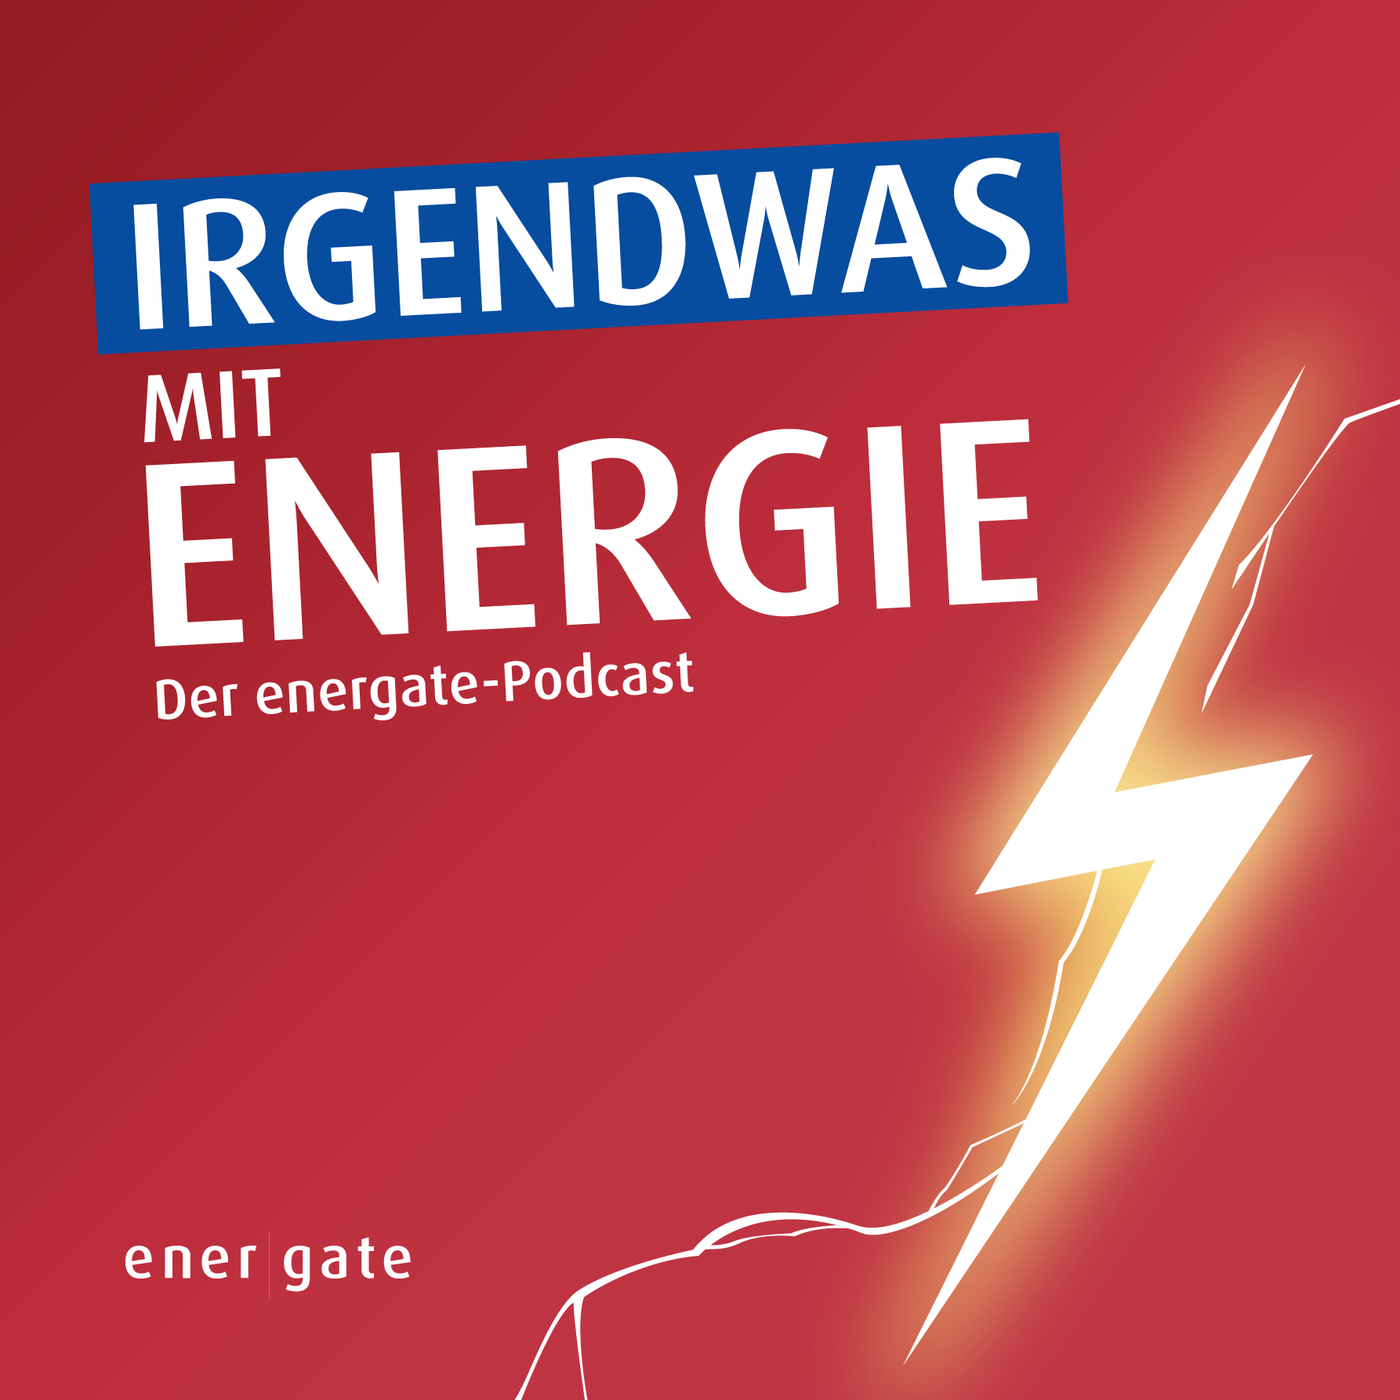 News-Update vom 06.01.2023 - FDP stresst die Ampel, Gasversorgung entspannt, Energiewirtschaft positiv gestimmt